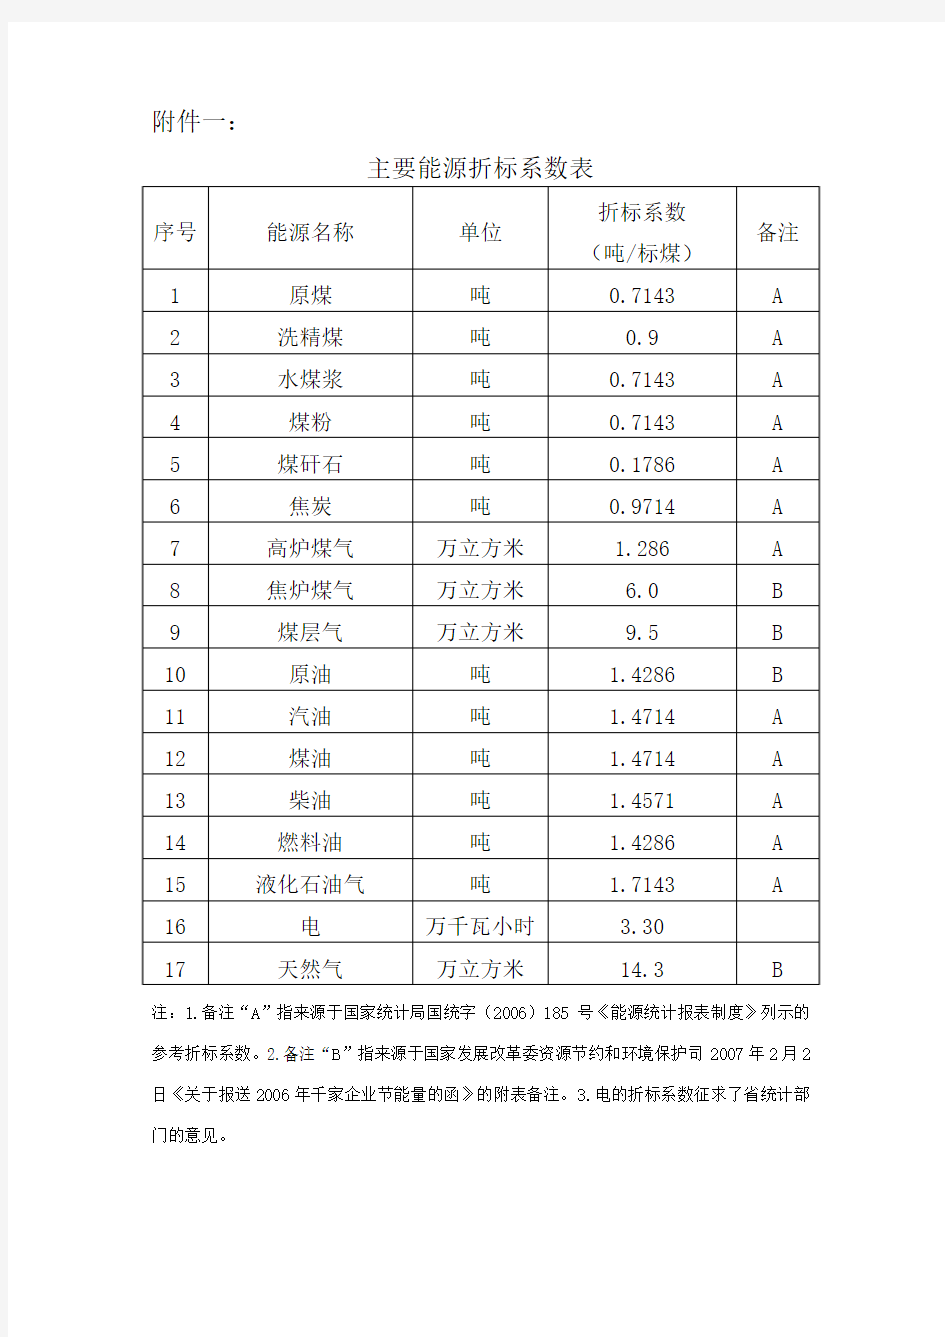 江苏省发改委公布能源消耗折标系数参照标准